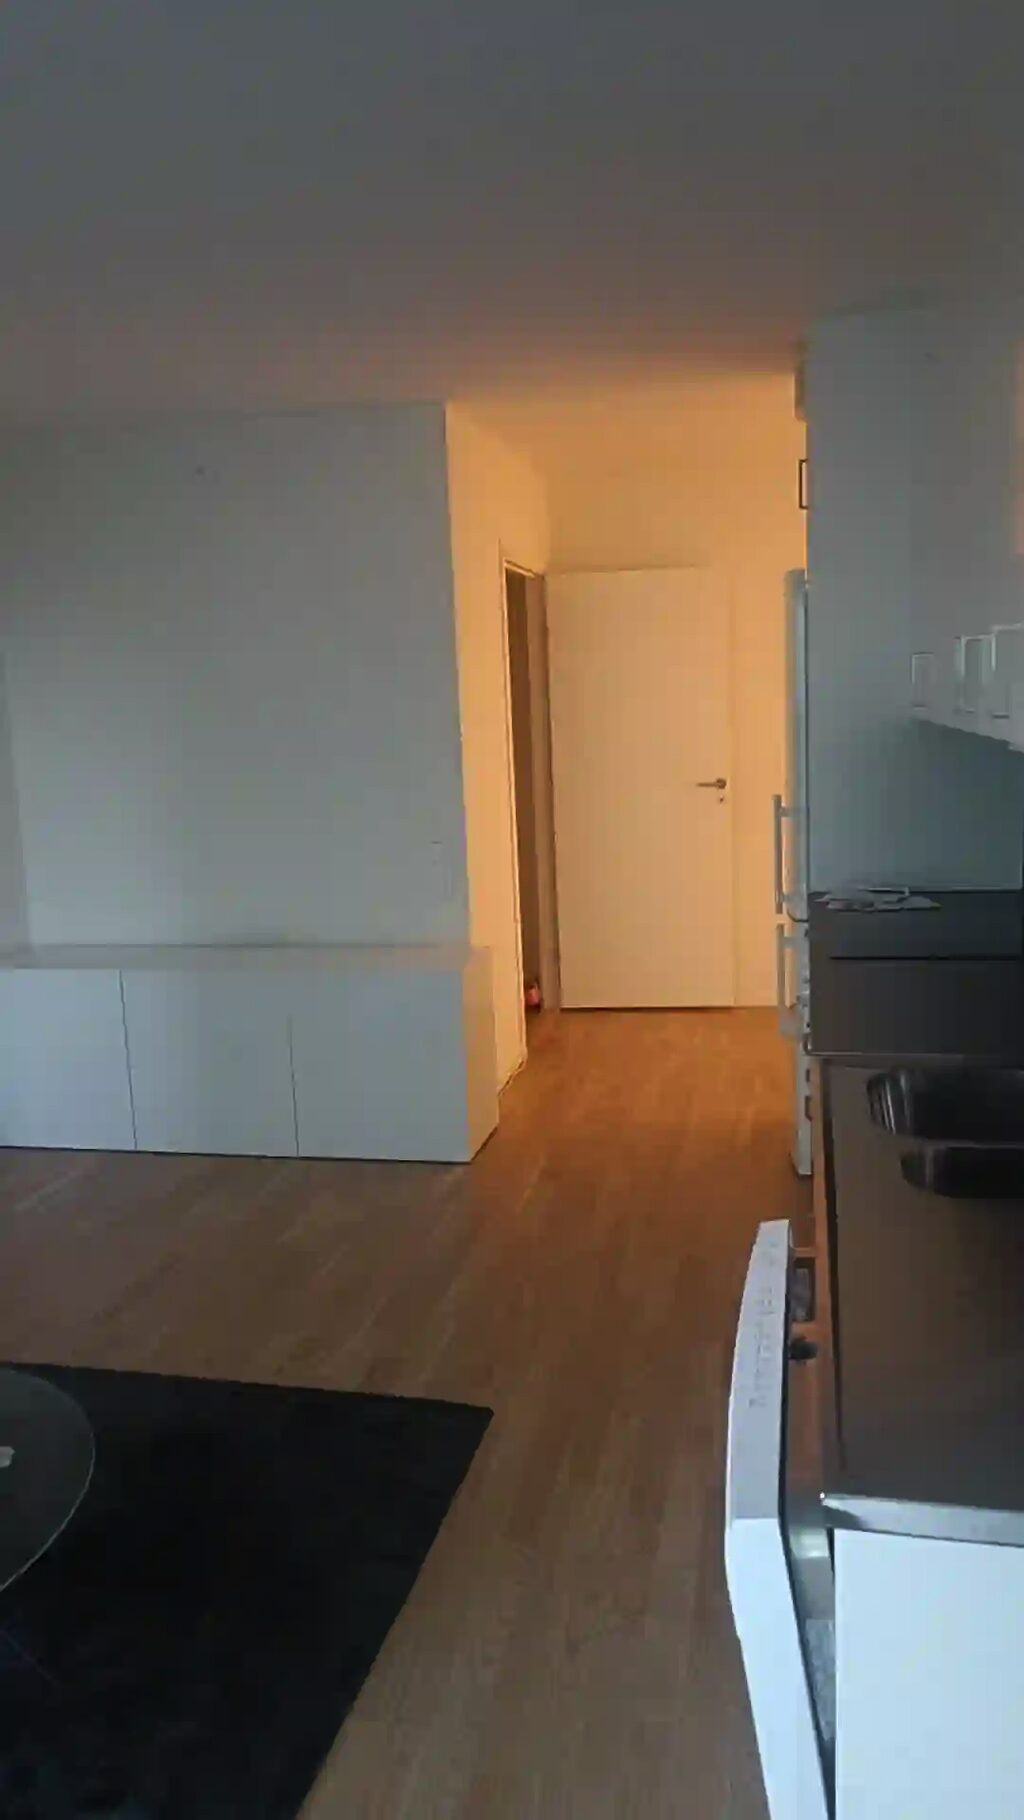 Lägenhetsbyte - Knapebacken 25, 43638 Askim, Sverige